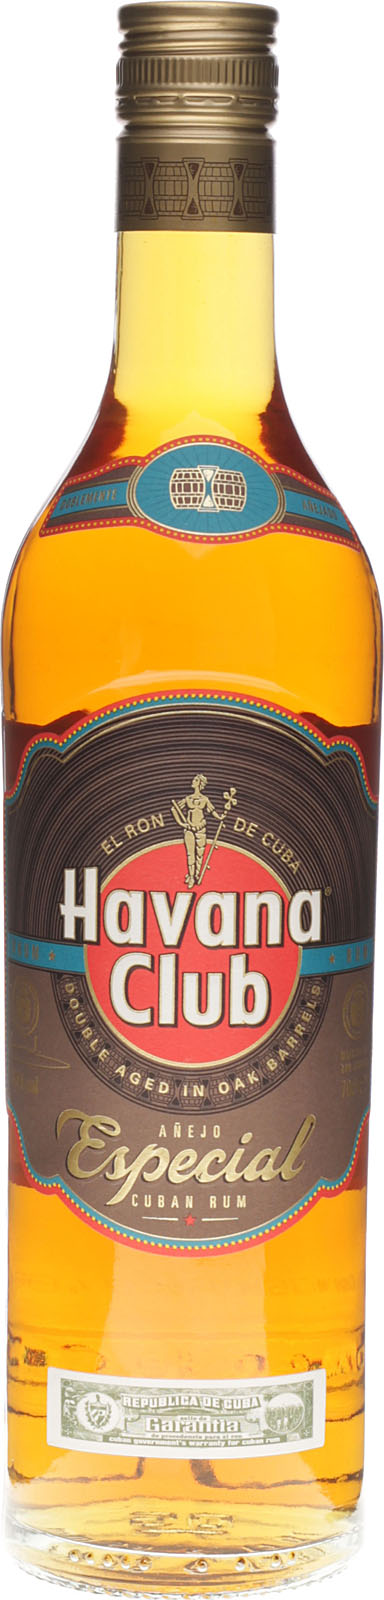 ist mit 700 ein Club Cuba Especial aus Havana Rum Anejo